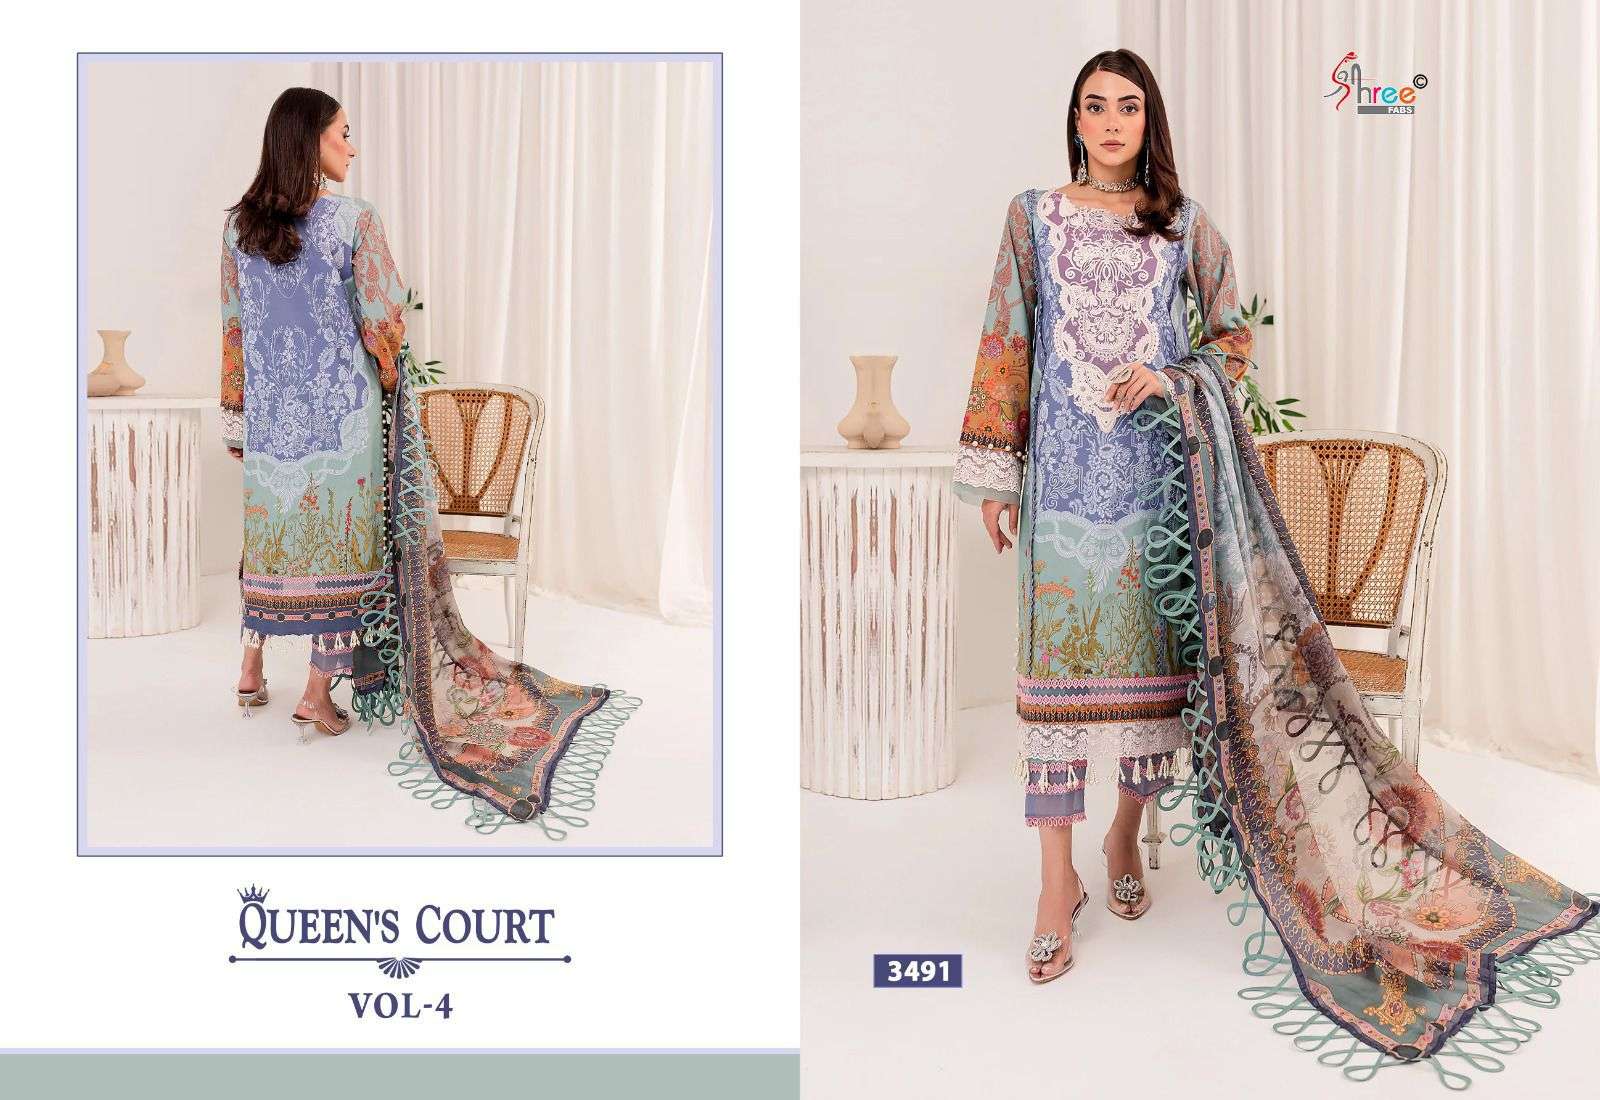 Shree Queens Court Vol 4 Cotton Dupatta Pakistani Suits Wholesale catalog